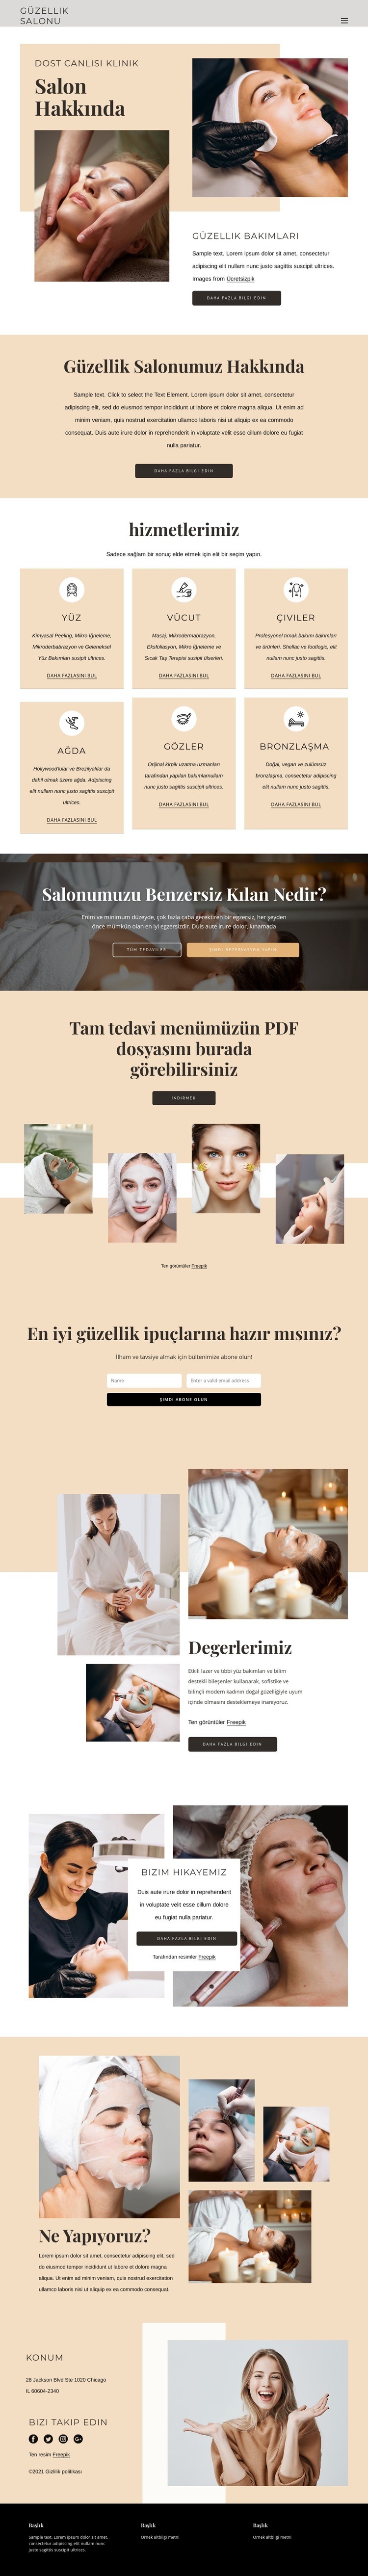 Güzellik ve estetik tedaviler Web Sitesi Mockup'ı